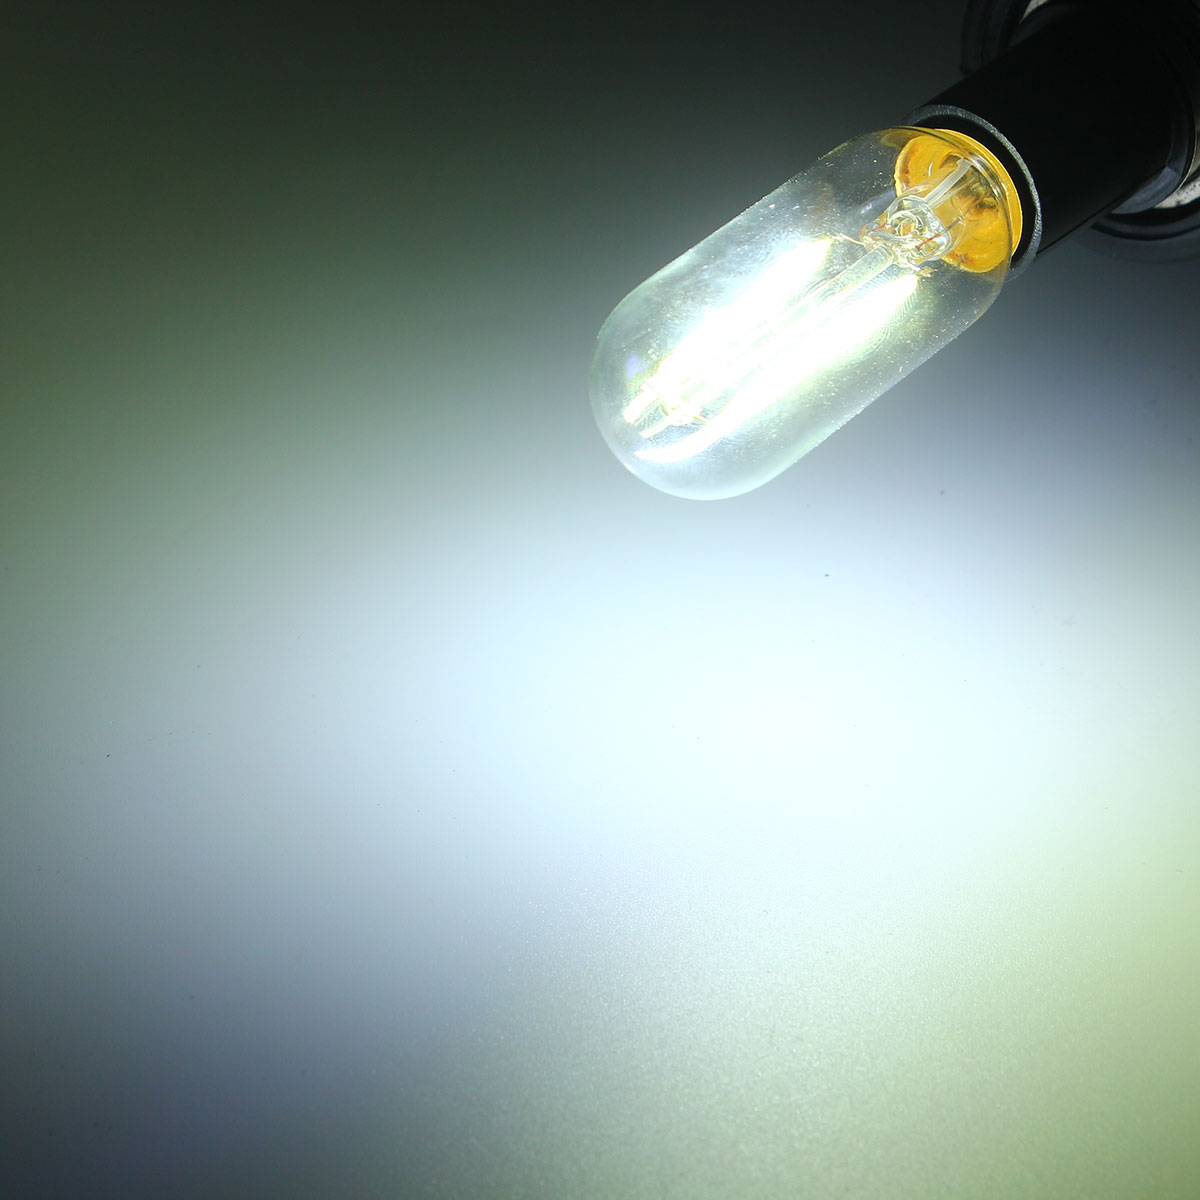 Dimmable-E12-T25-2W-LED-White-Warm-White-COB-Retro-Vintage-Edison-Filament-Light-Bulb-AC110V-1063499